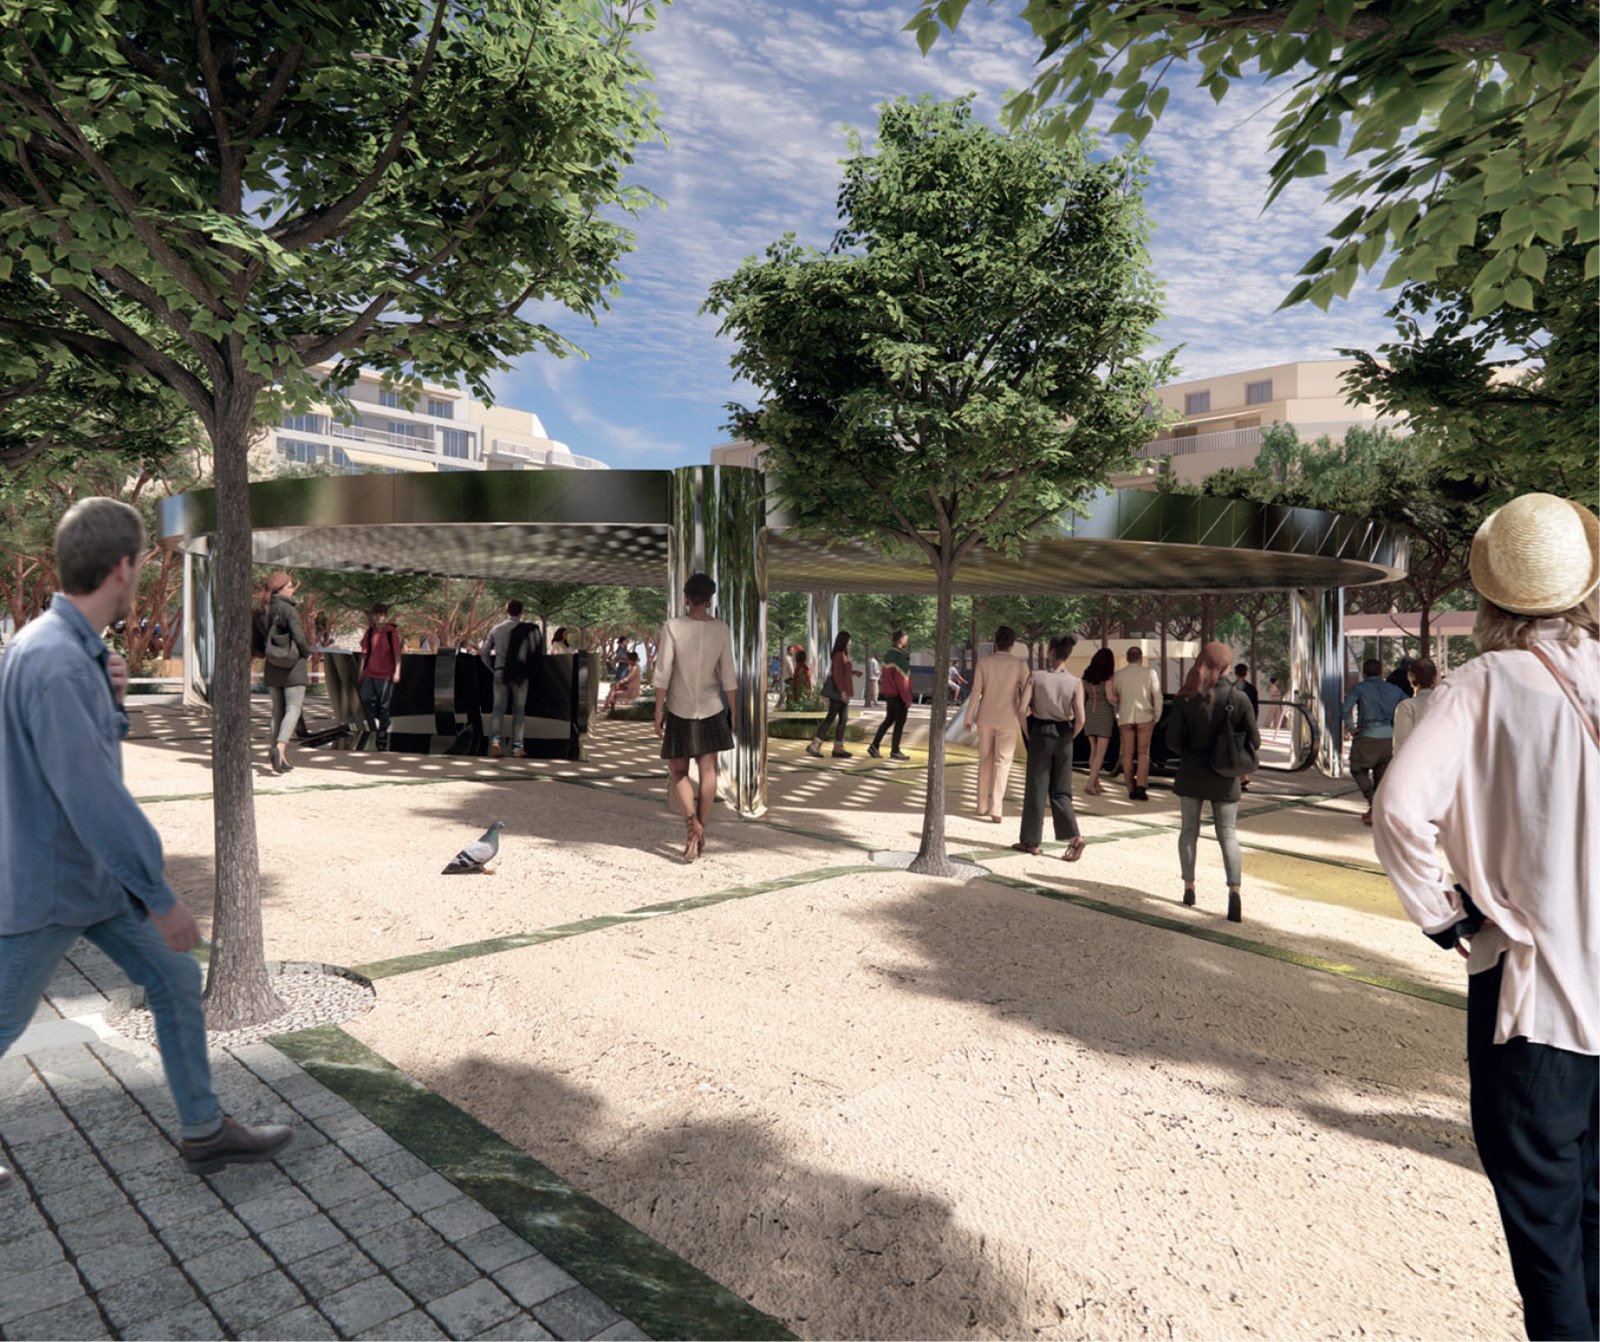 Ανάπλαση του κοινόχρηστου χώρου και της ευρύτερης περιοχής του νέου σταθμού Μετρό ΚΟΛΩΝΑΚΙ | Β' Βραβείο